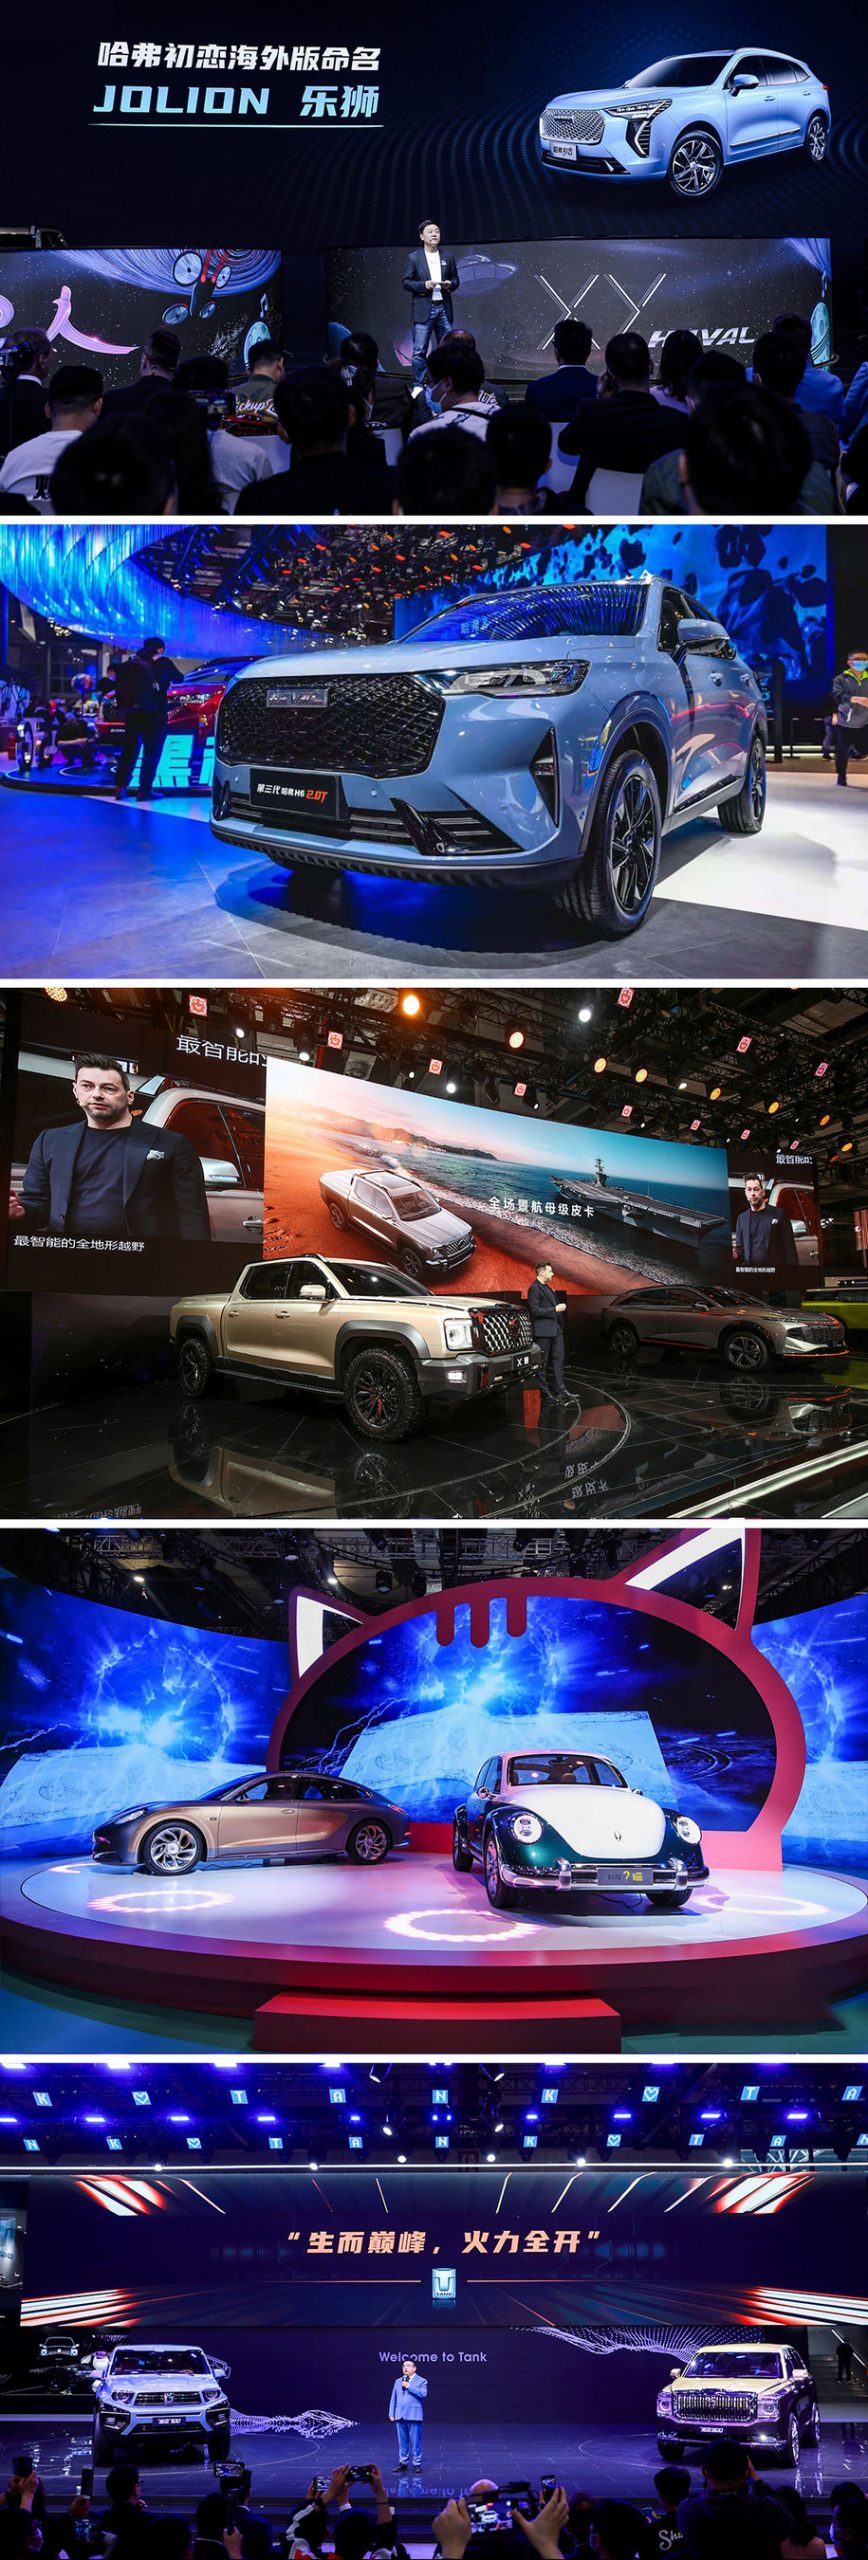 ไฮไลท์จากมหกรรมยานยนต์ Auto Shanghai: GWM เดินหน้าเจาะตลาดโลกผ่าน 5 แบรนด์ยานยนต์ชั้นนำ